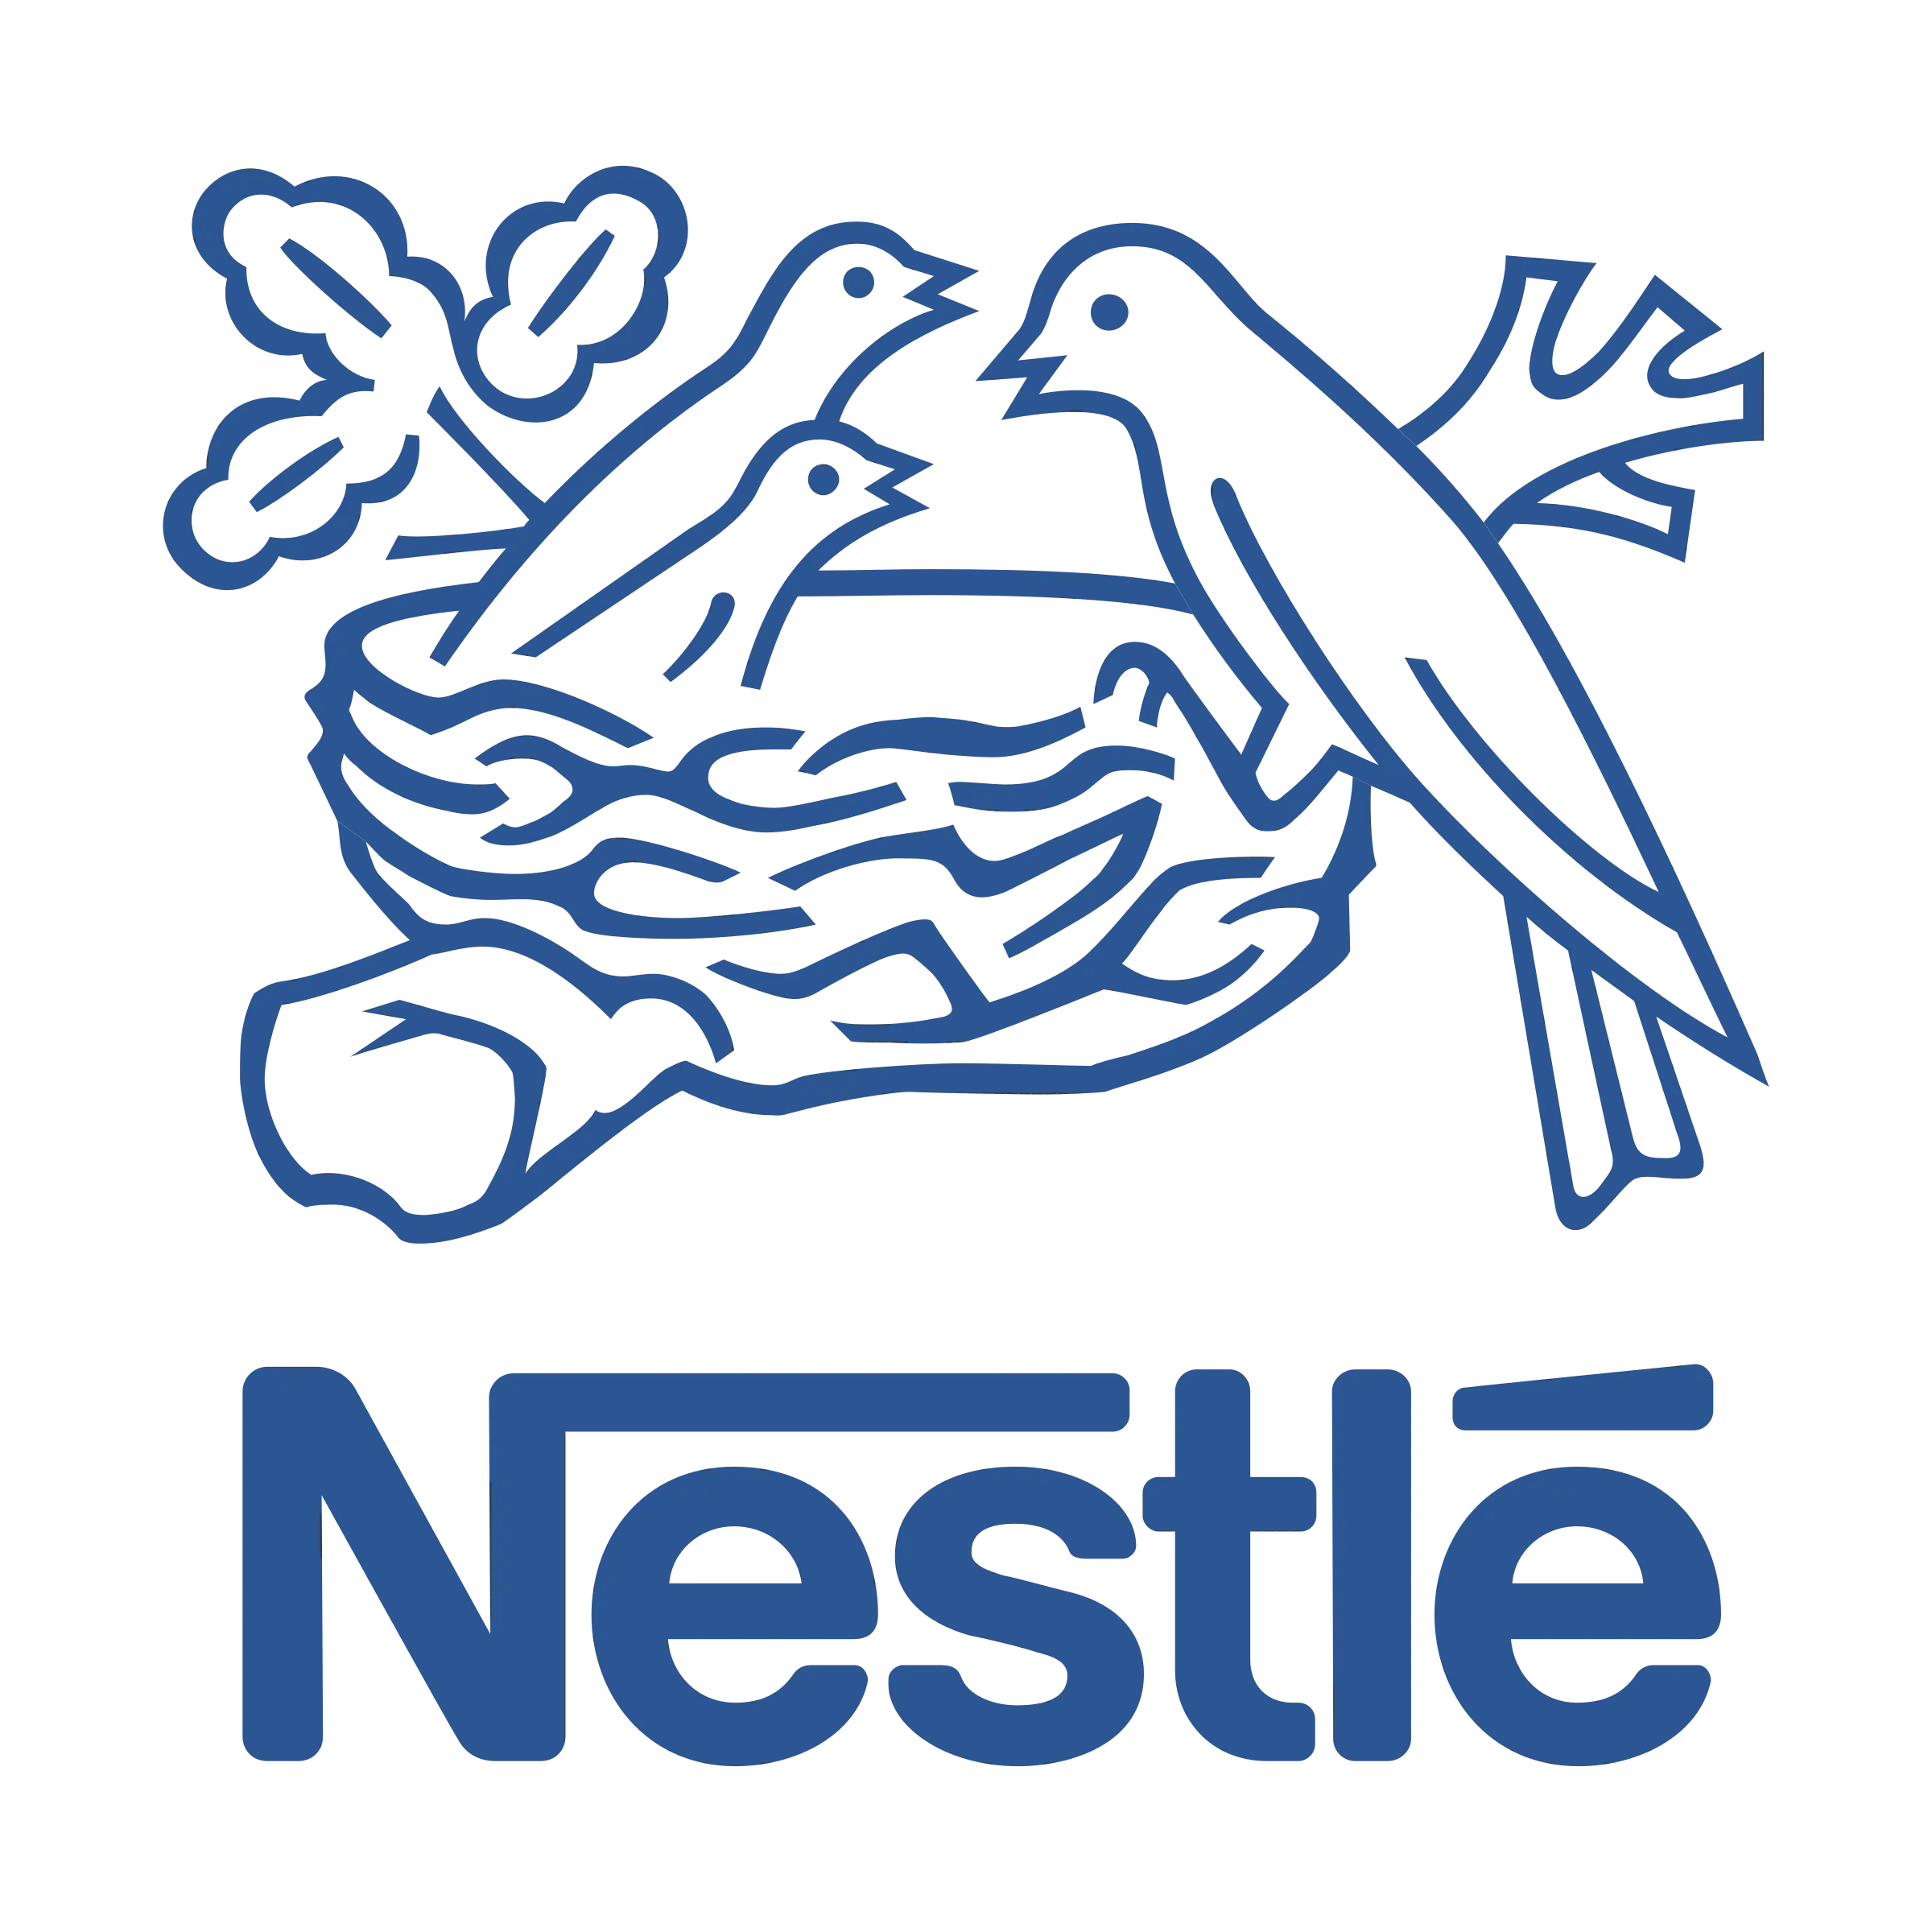 nestle-9-logo-png-transparent